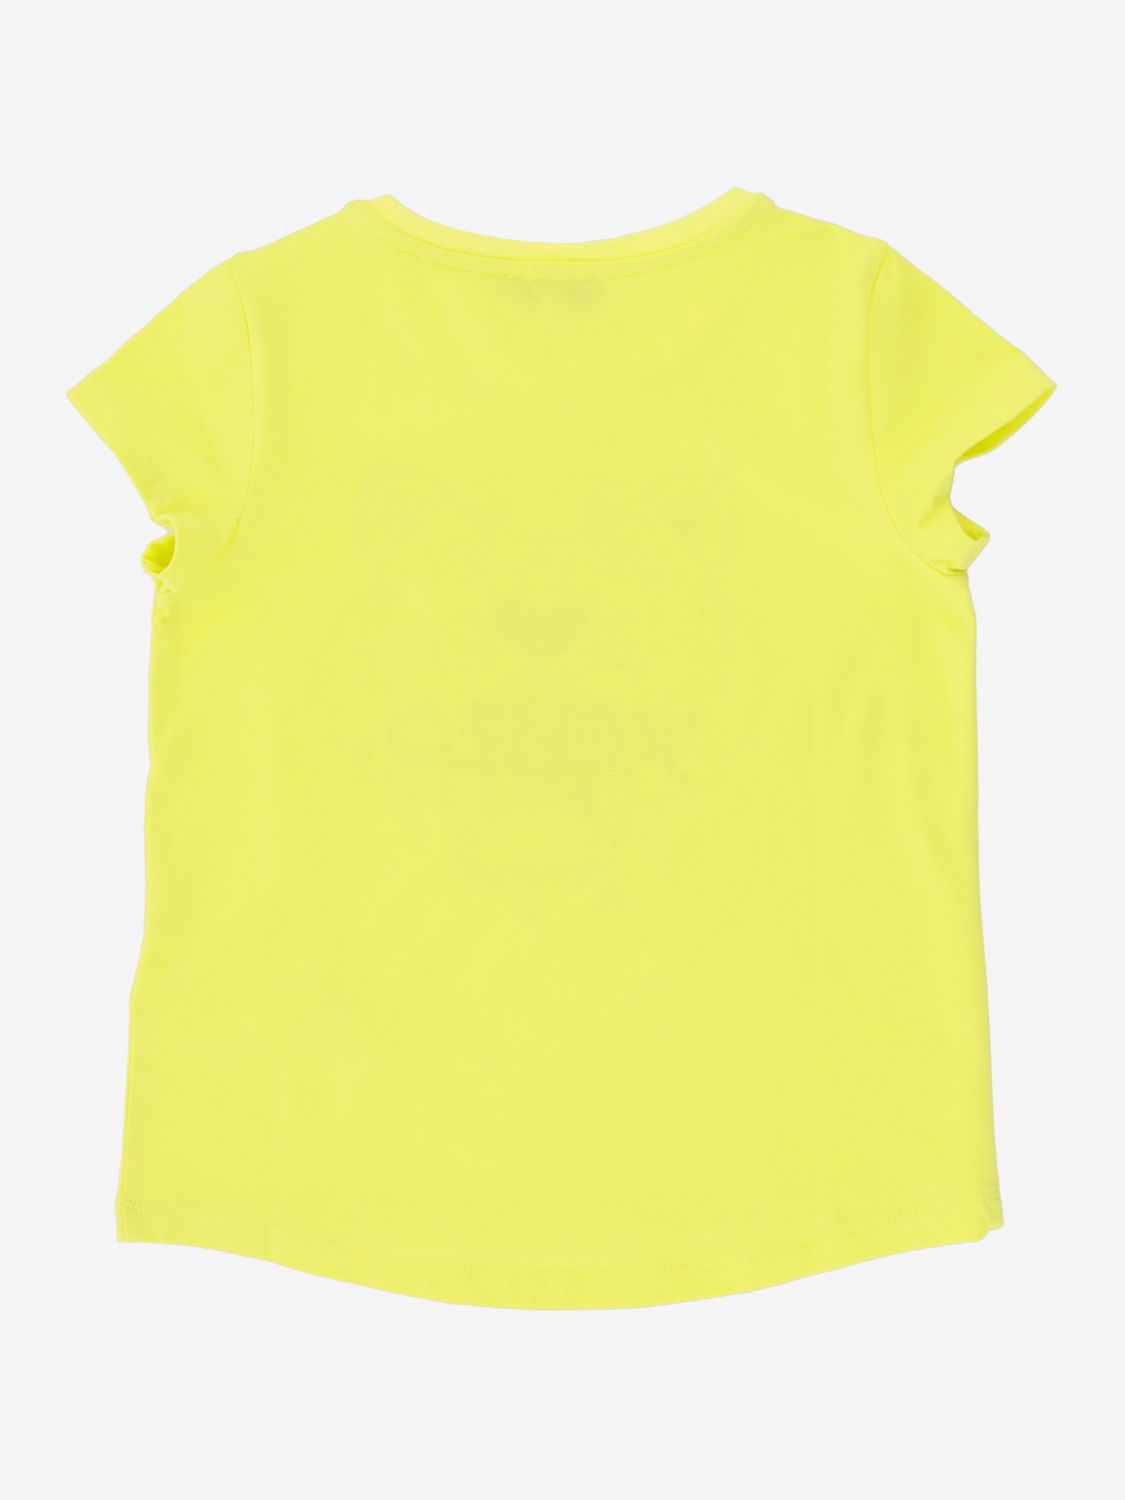 kenzo yellow t shirt